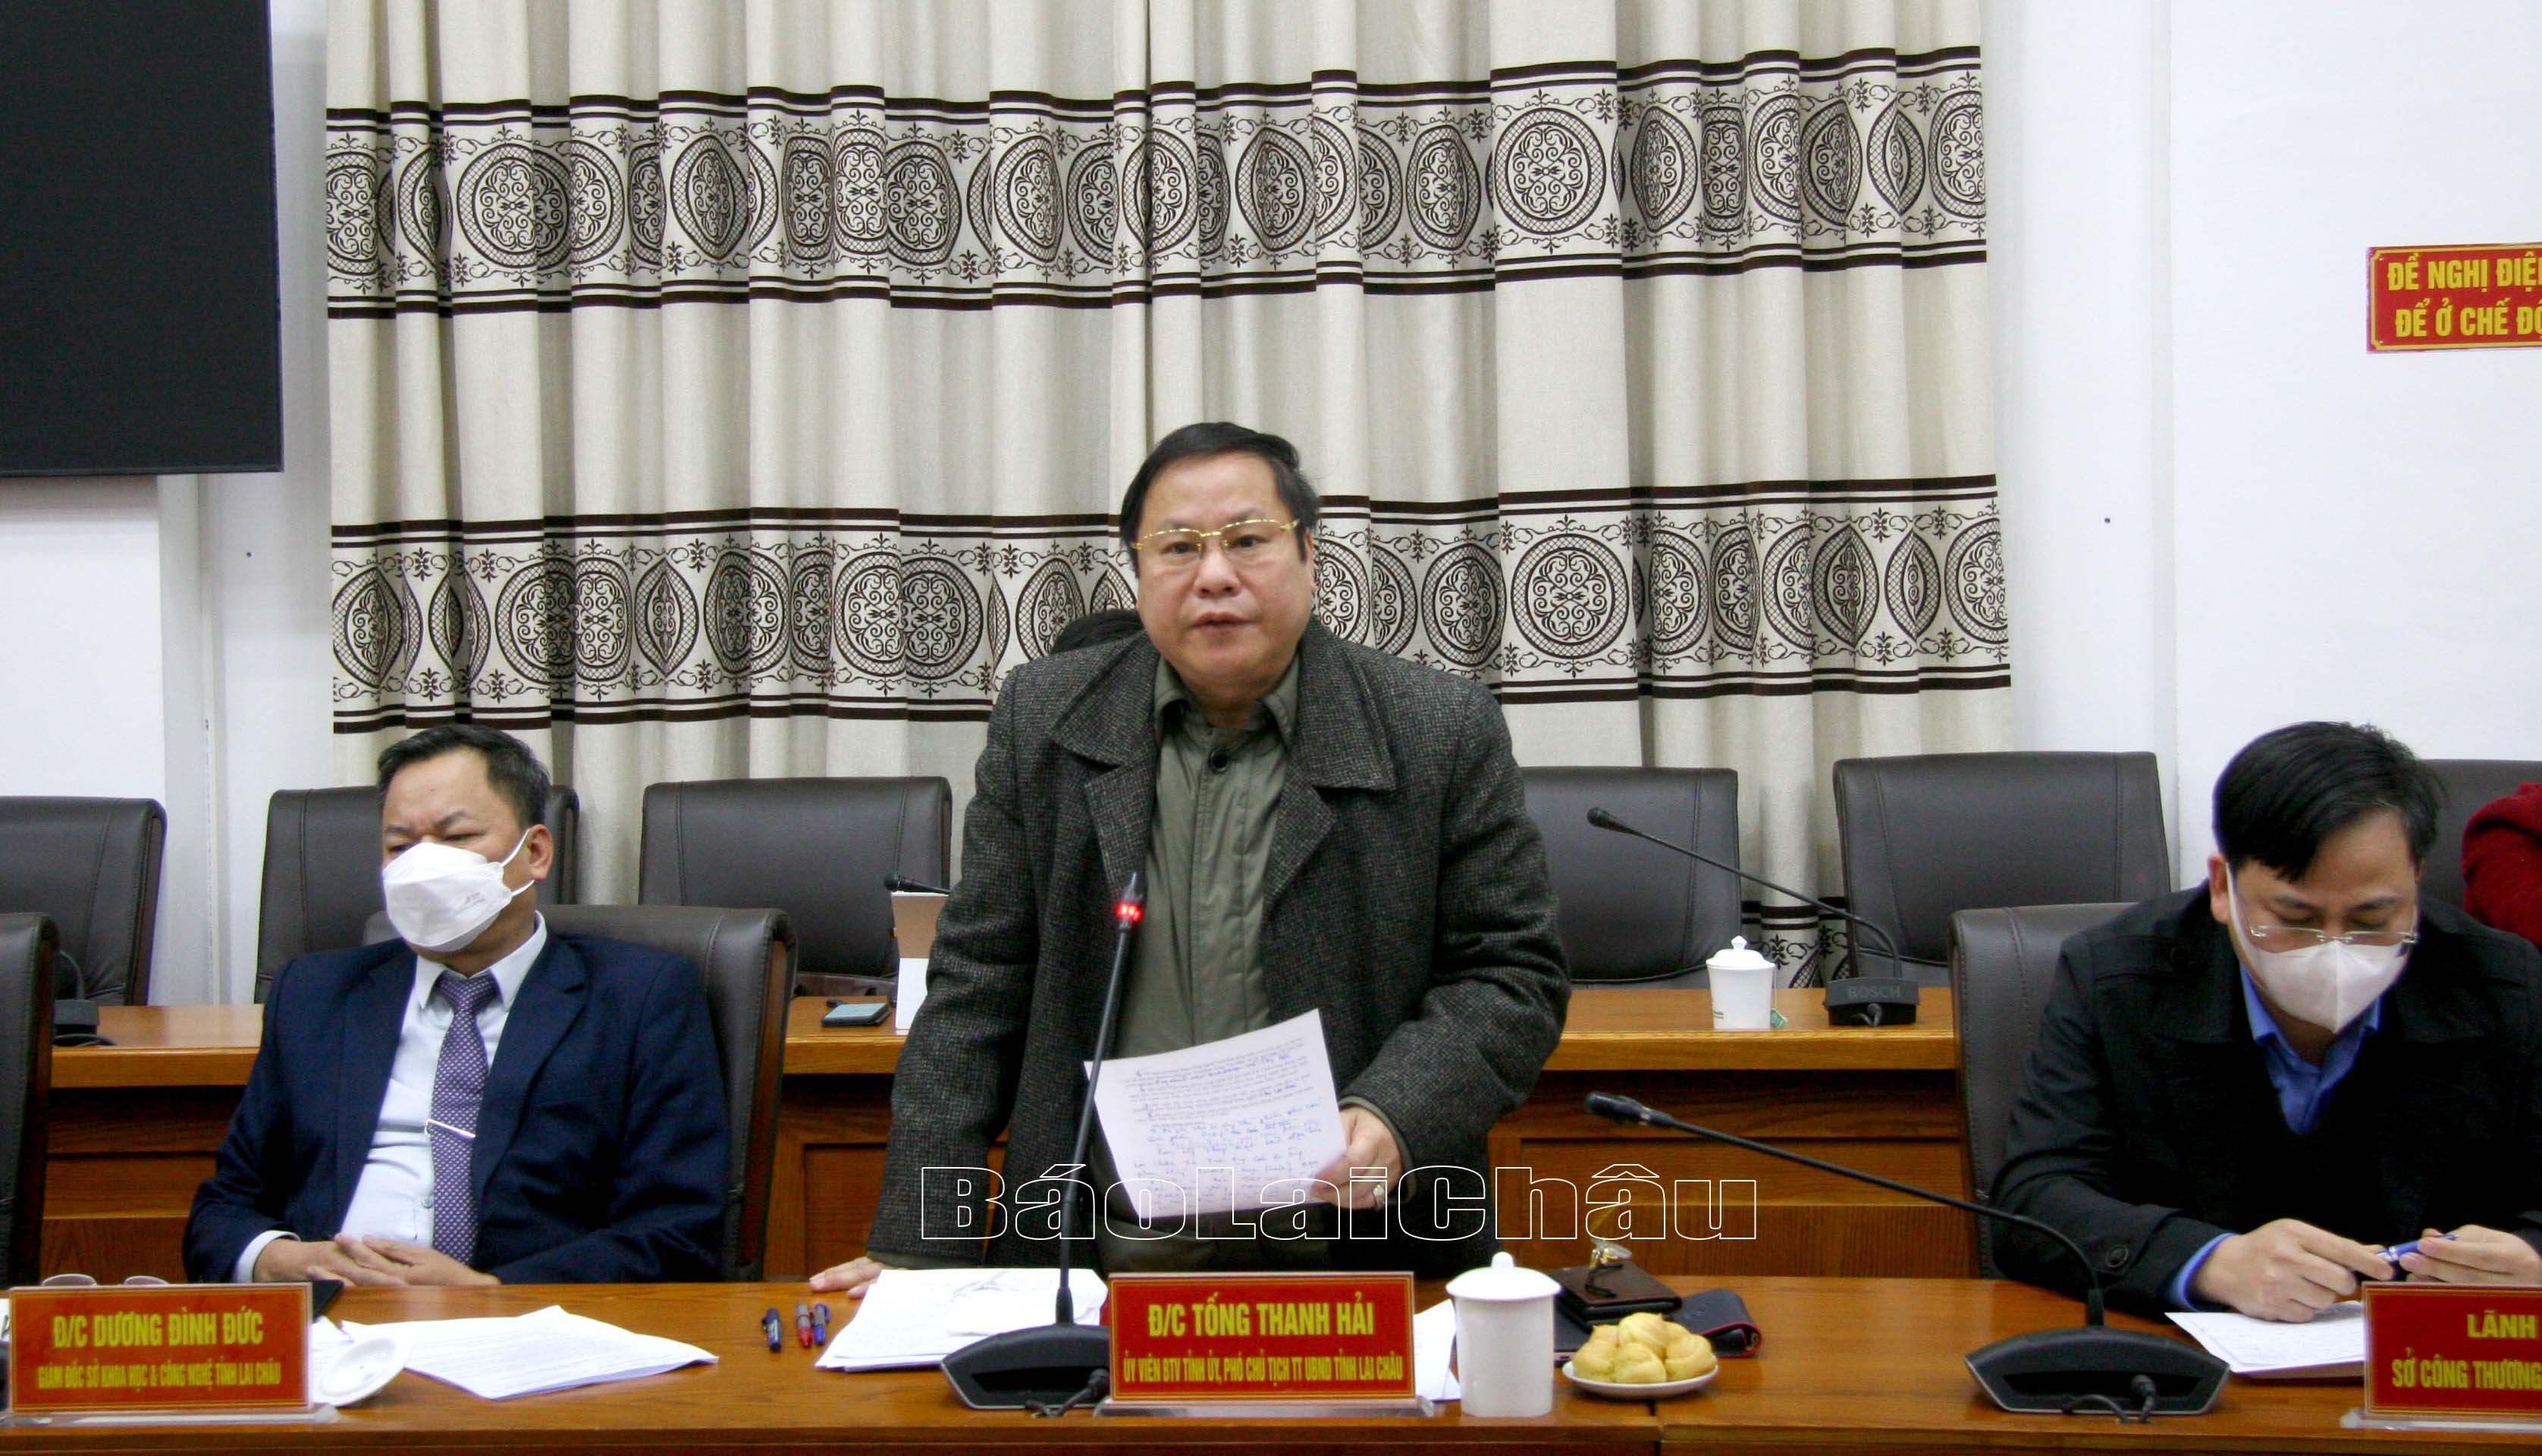 Đồng chí Tống Thanh Hải - Ủy viên Ban Thường vụ Tỉnh ủy, Phó Chủ tịch Thường trực UBND tỉnh phát biểu kết luận Hội nghị.